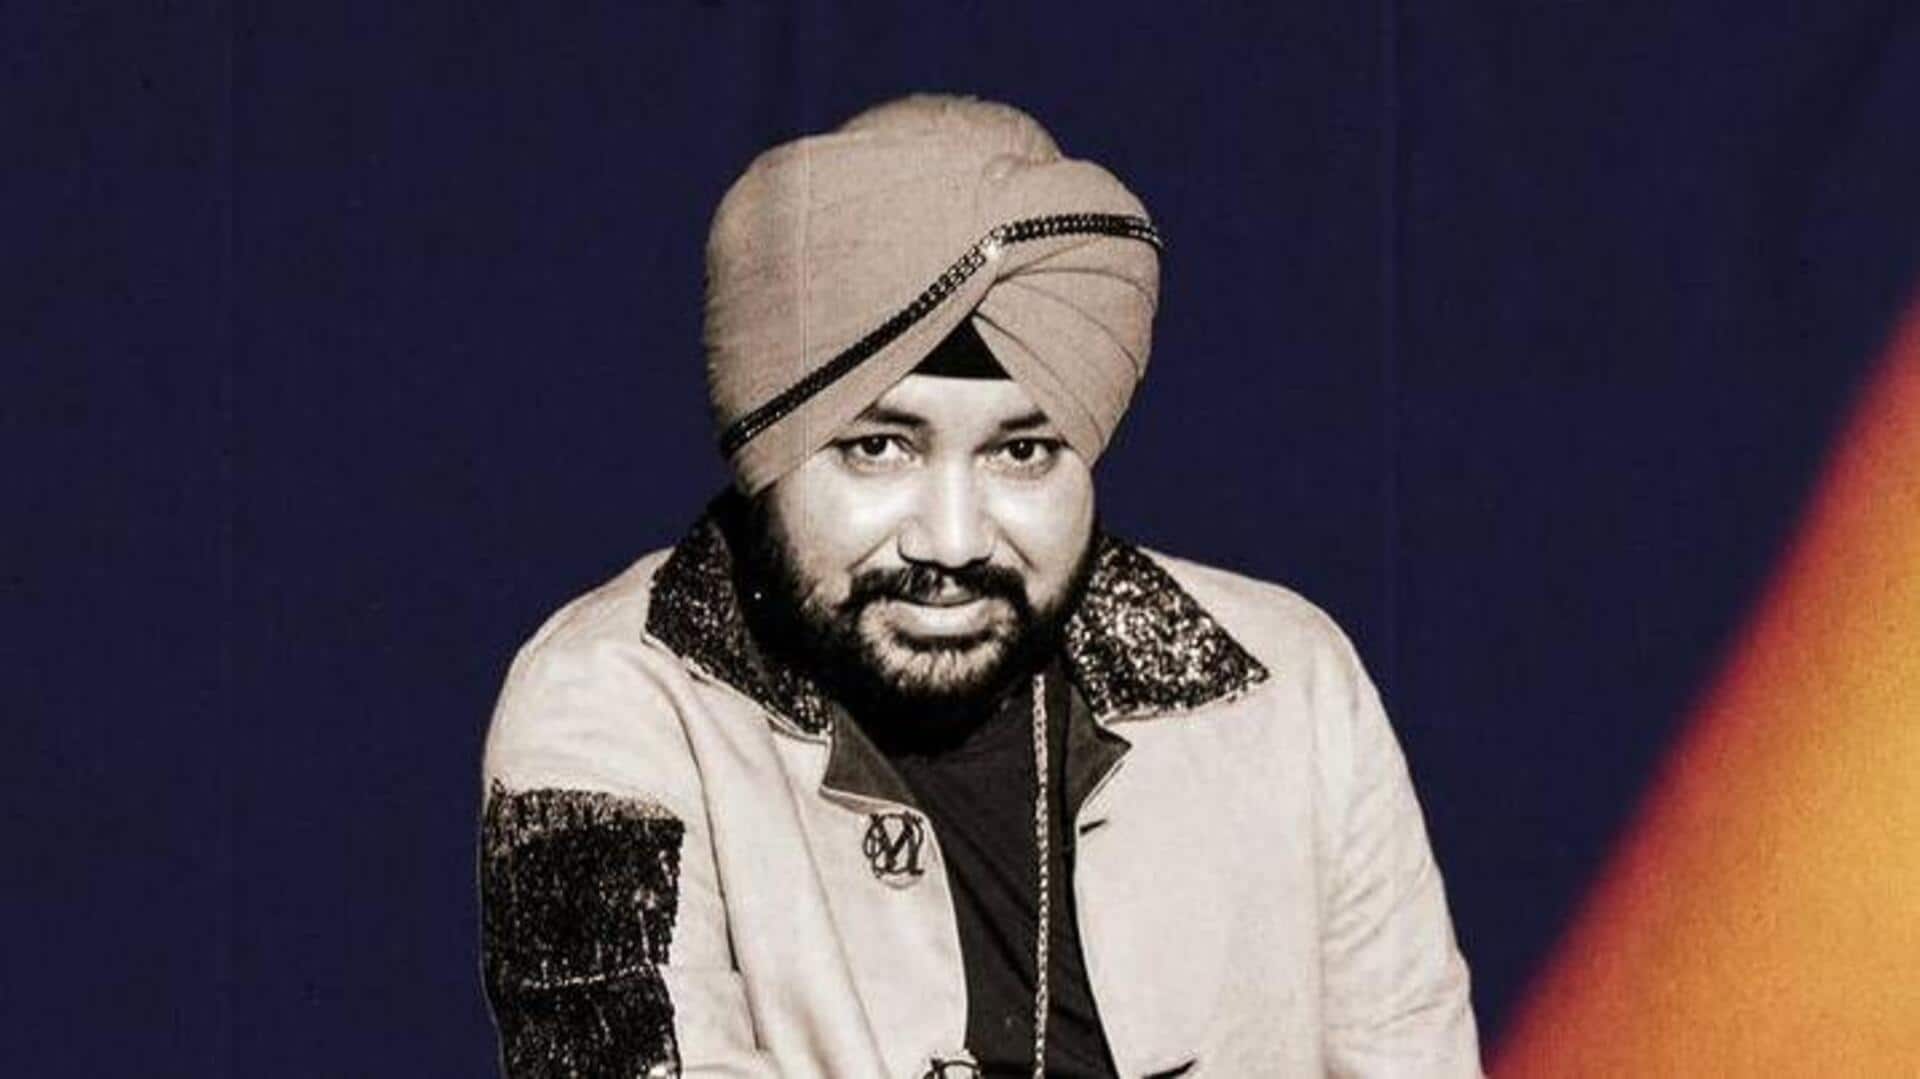 दलेर मेहंदी के भारत आने के खिलाफ थे दारा सिंह, गायक ने खुद किया खुलासा